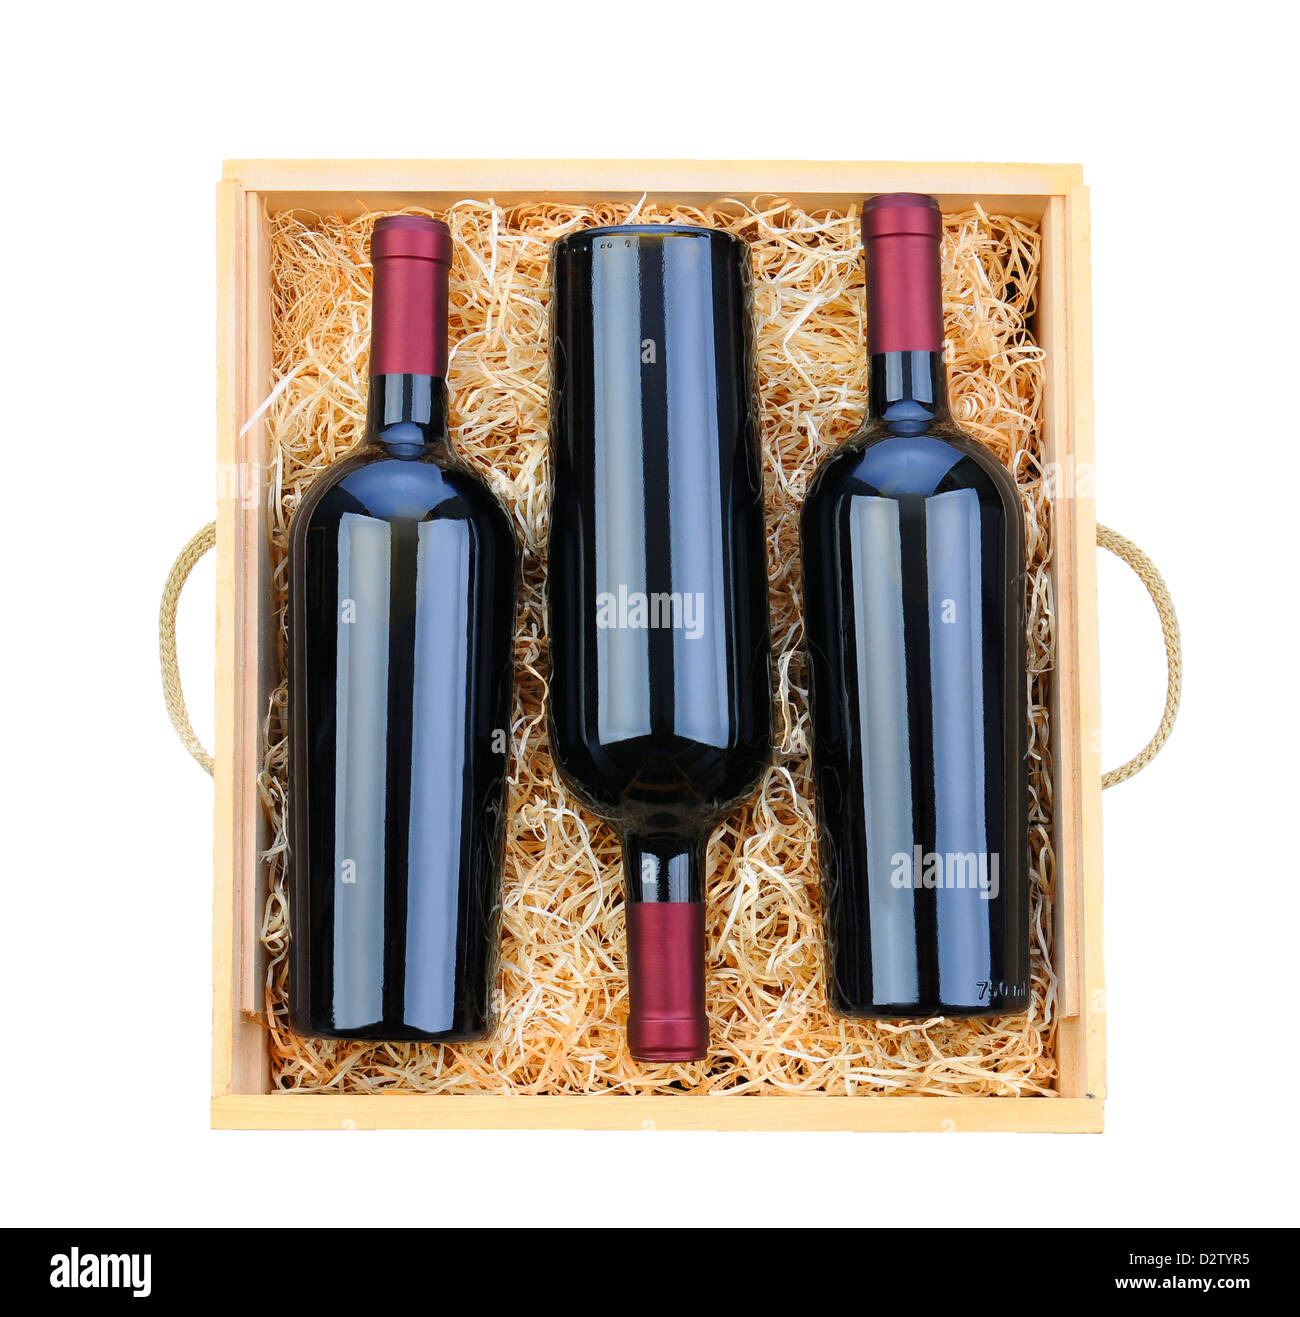 Nahaufnahme von drei roten Weinflaschen in einem Holzkästchen mit Stroh Verpackung. Overhead Schuss auf einem weißen Hintergrund. Stockfoto